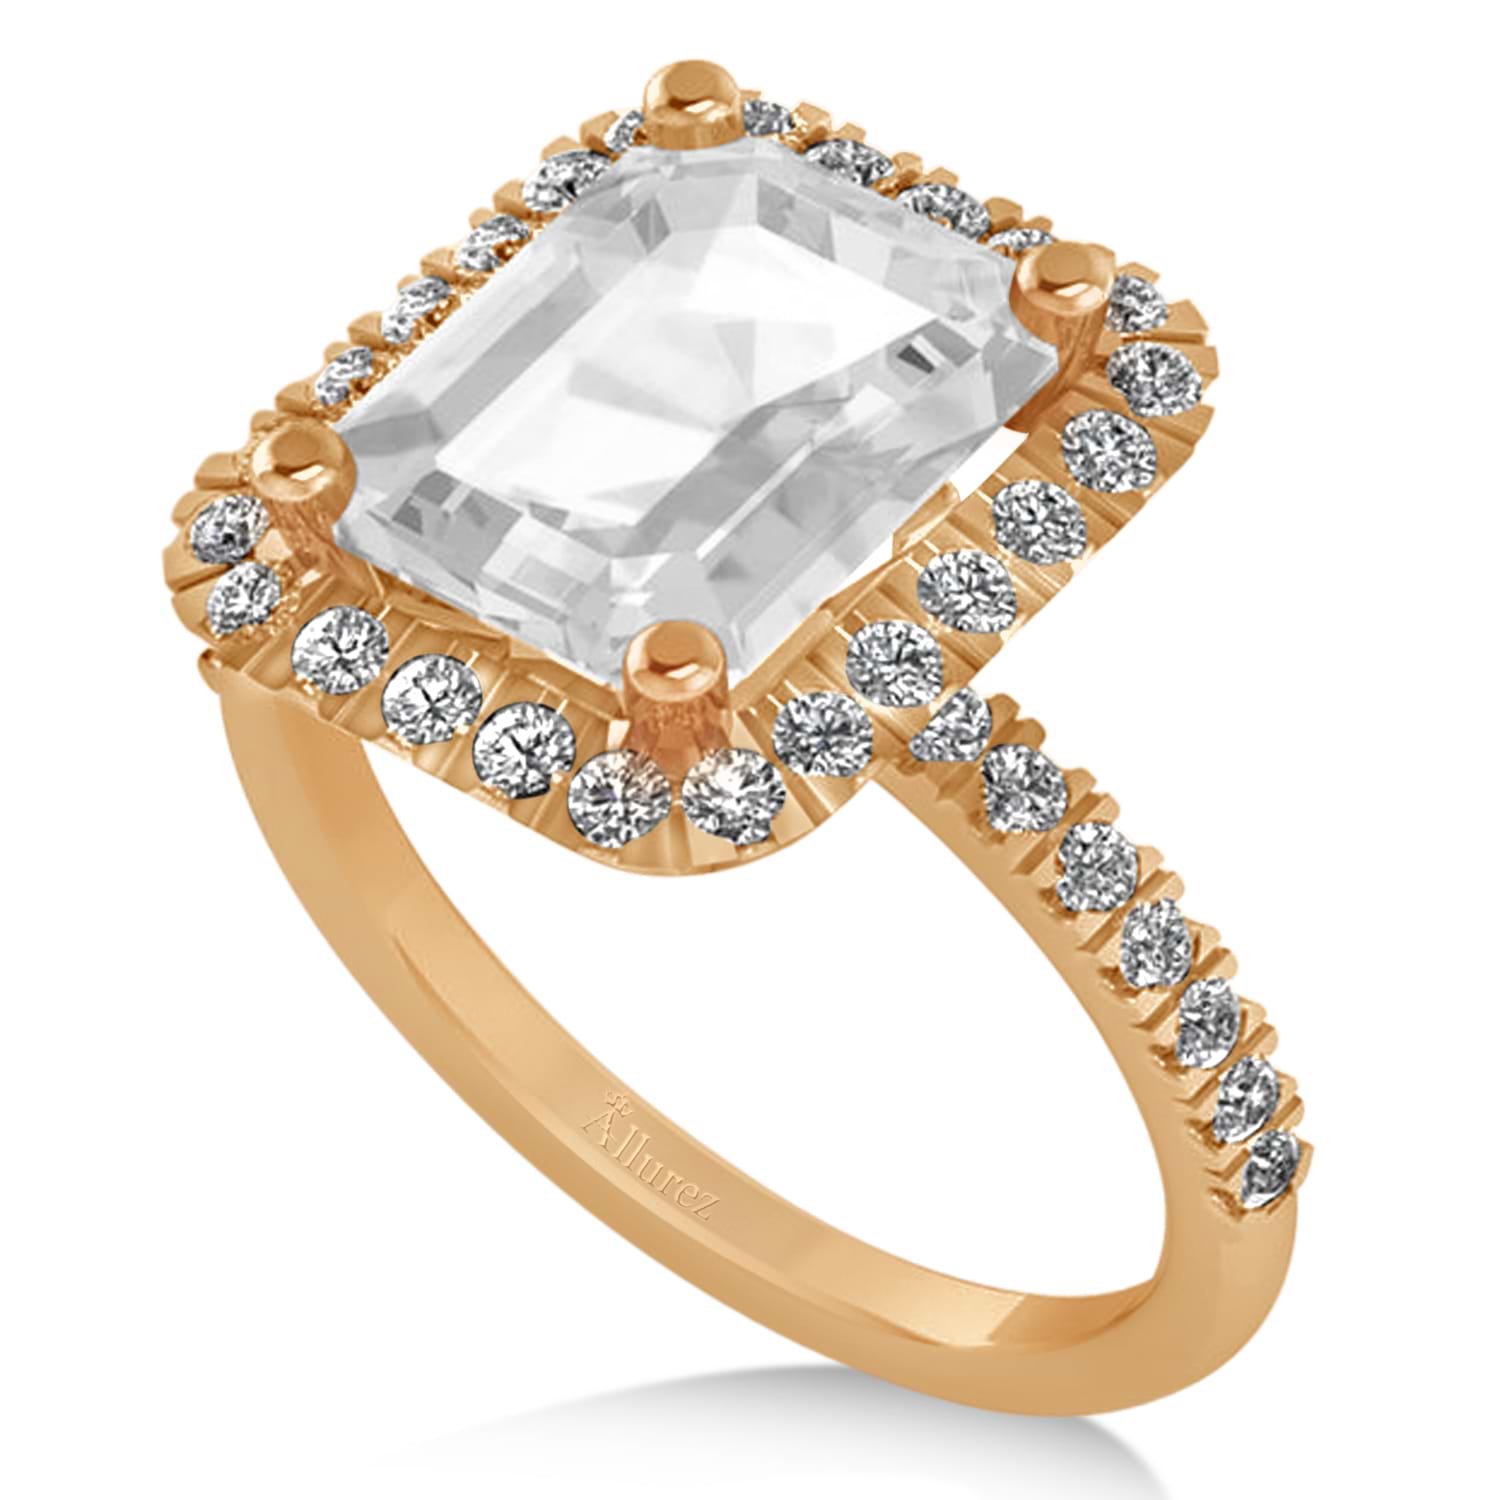 White Topaz Diamond Engagement Ring 18k Rose Gold (3.32ct)